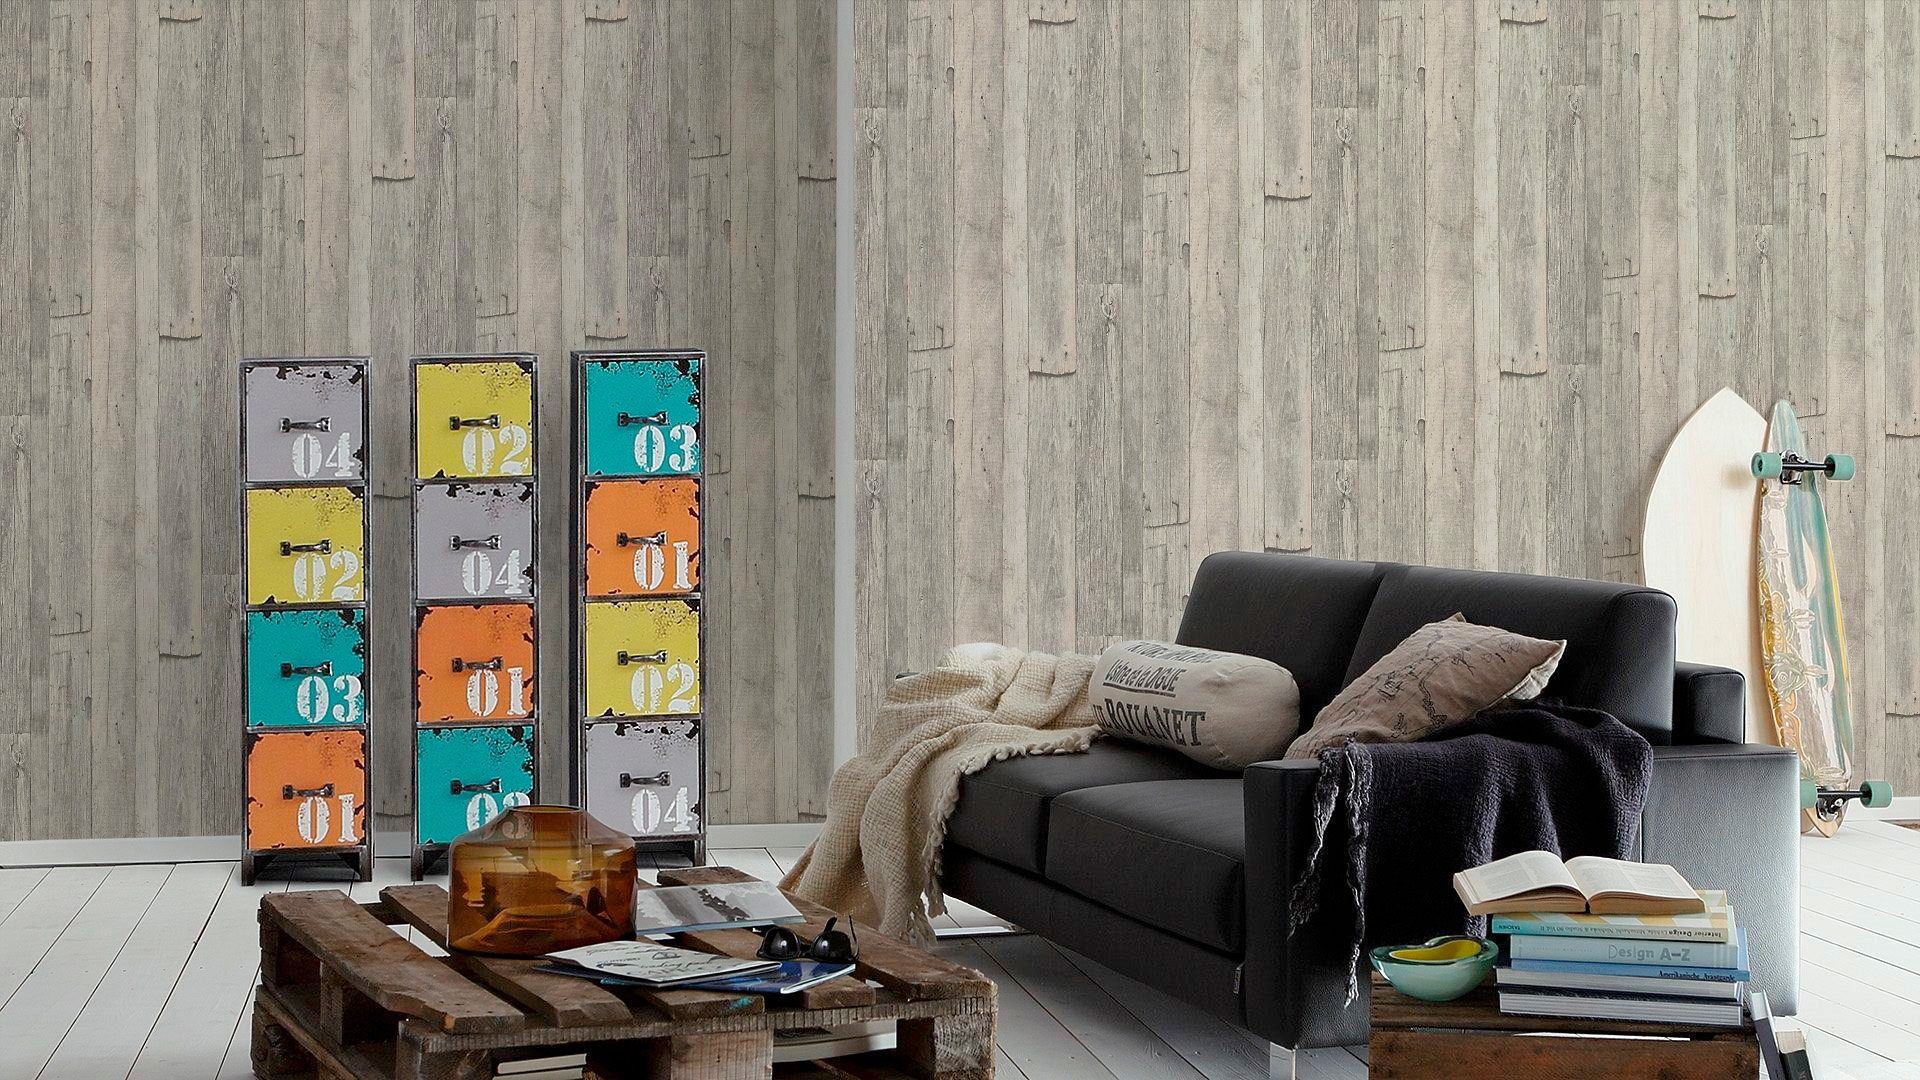 matt grau living Tapete walls leicht of 2nd Stone Vliestapete Best Edition, Holz, Wood`n strukturiert Holzoptik